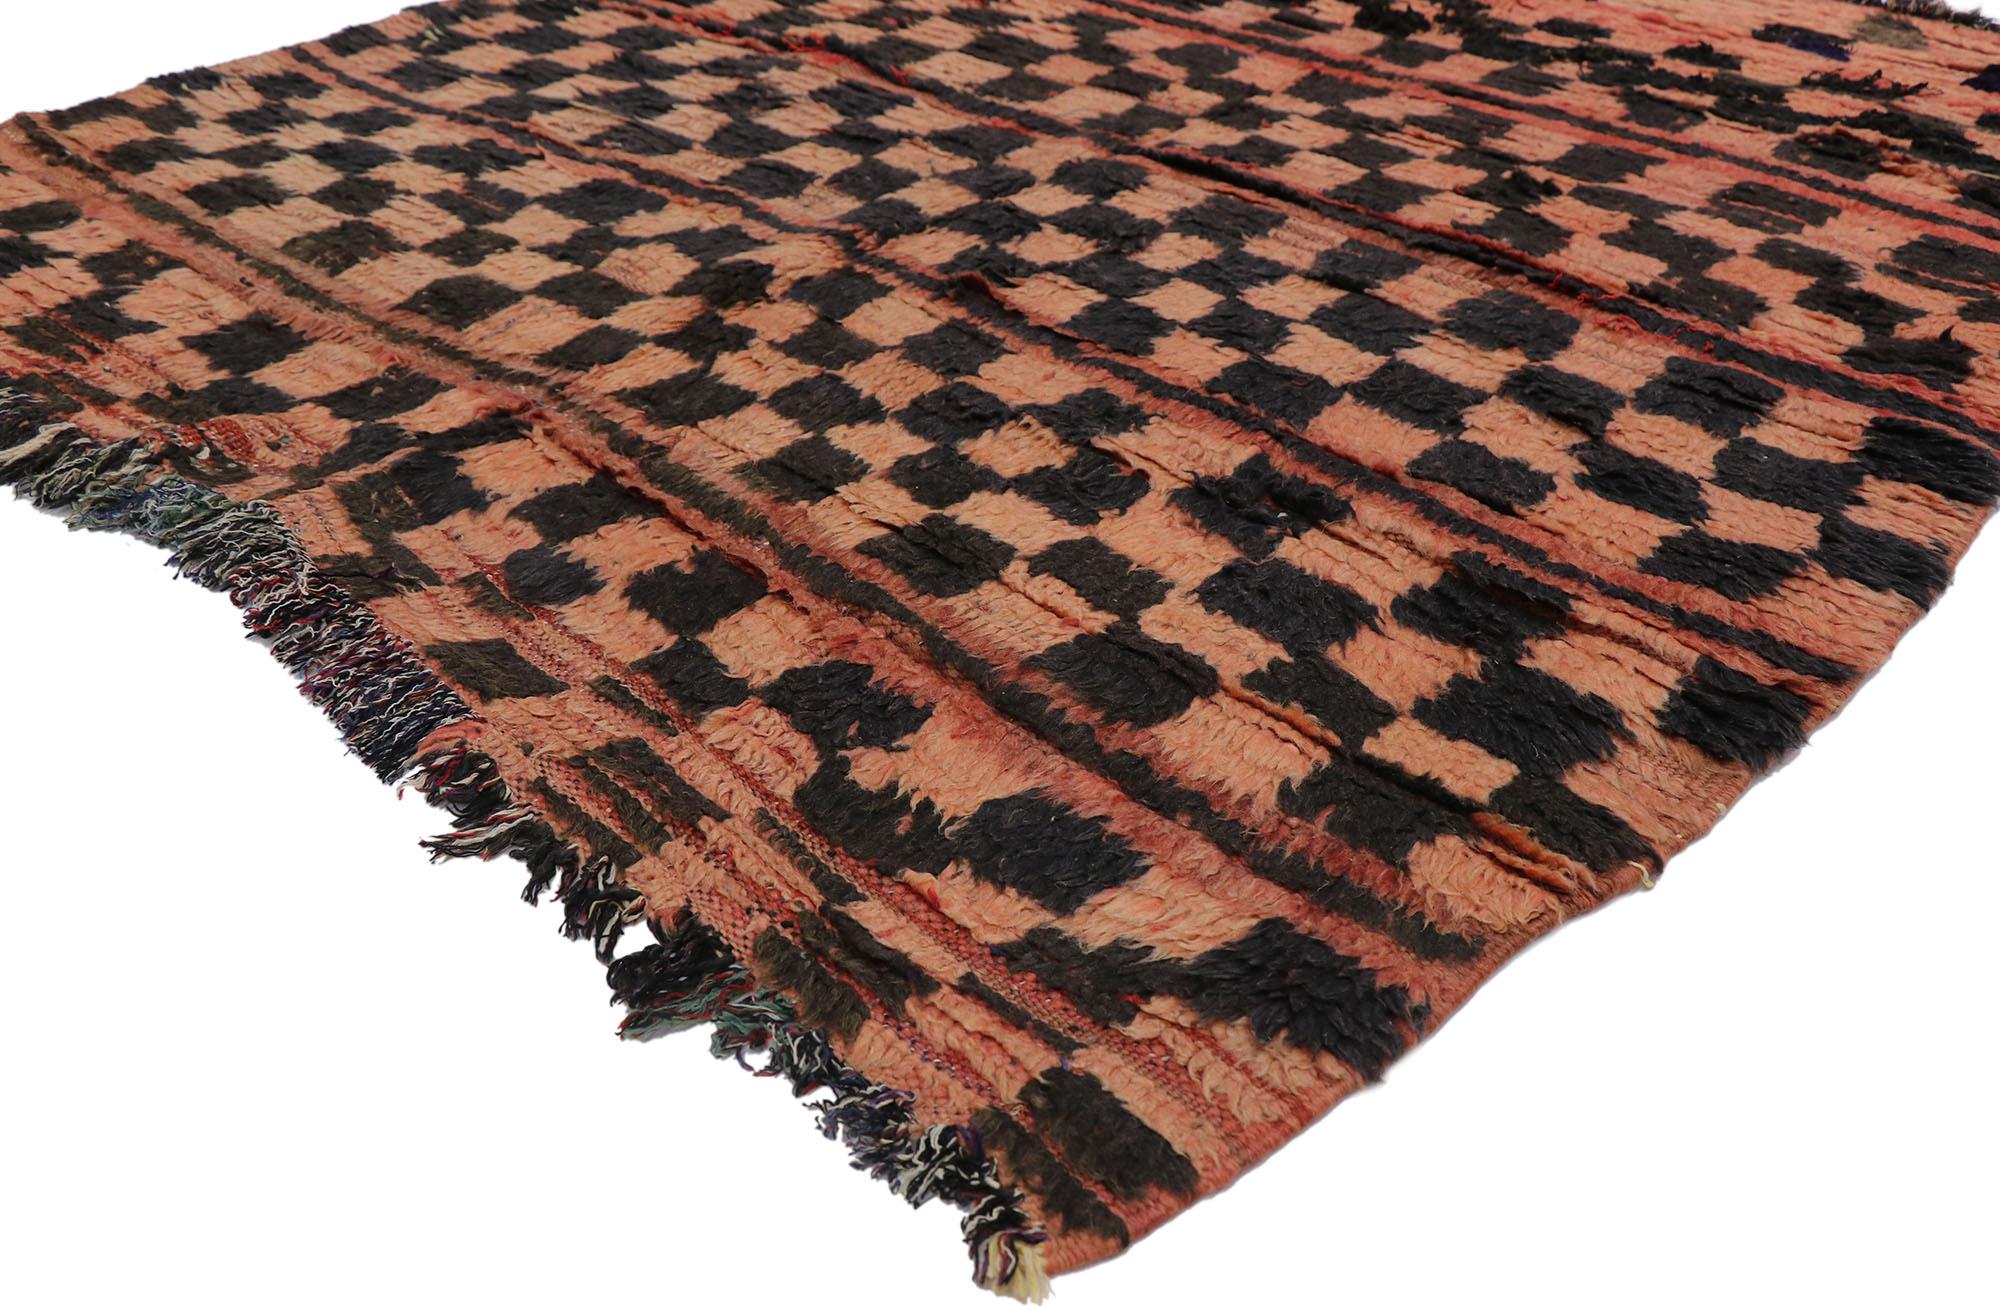 21673 Vieux tapis berbère marocain, Boujad Saddlebag avec style Bauhaus 04'07 x 04'09. Avec sa simplicité et son design expressif et audacieux, ce tapis berbère vintage Boujad Saddlebag en laine nouée à la main est une vision captivante de la beauté